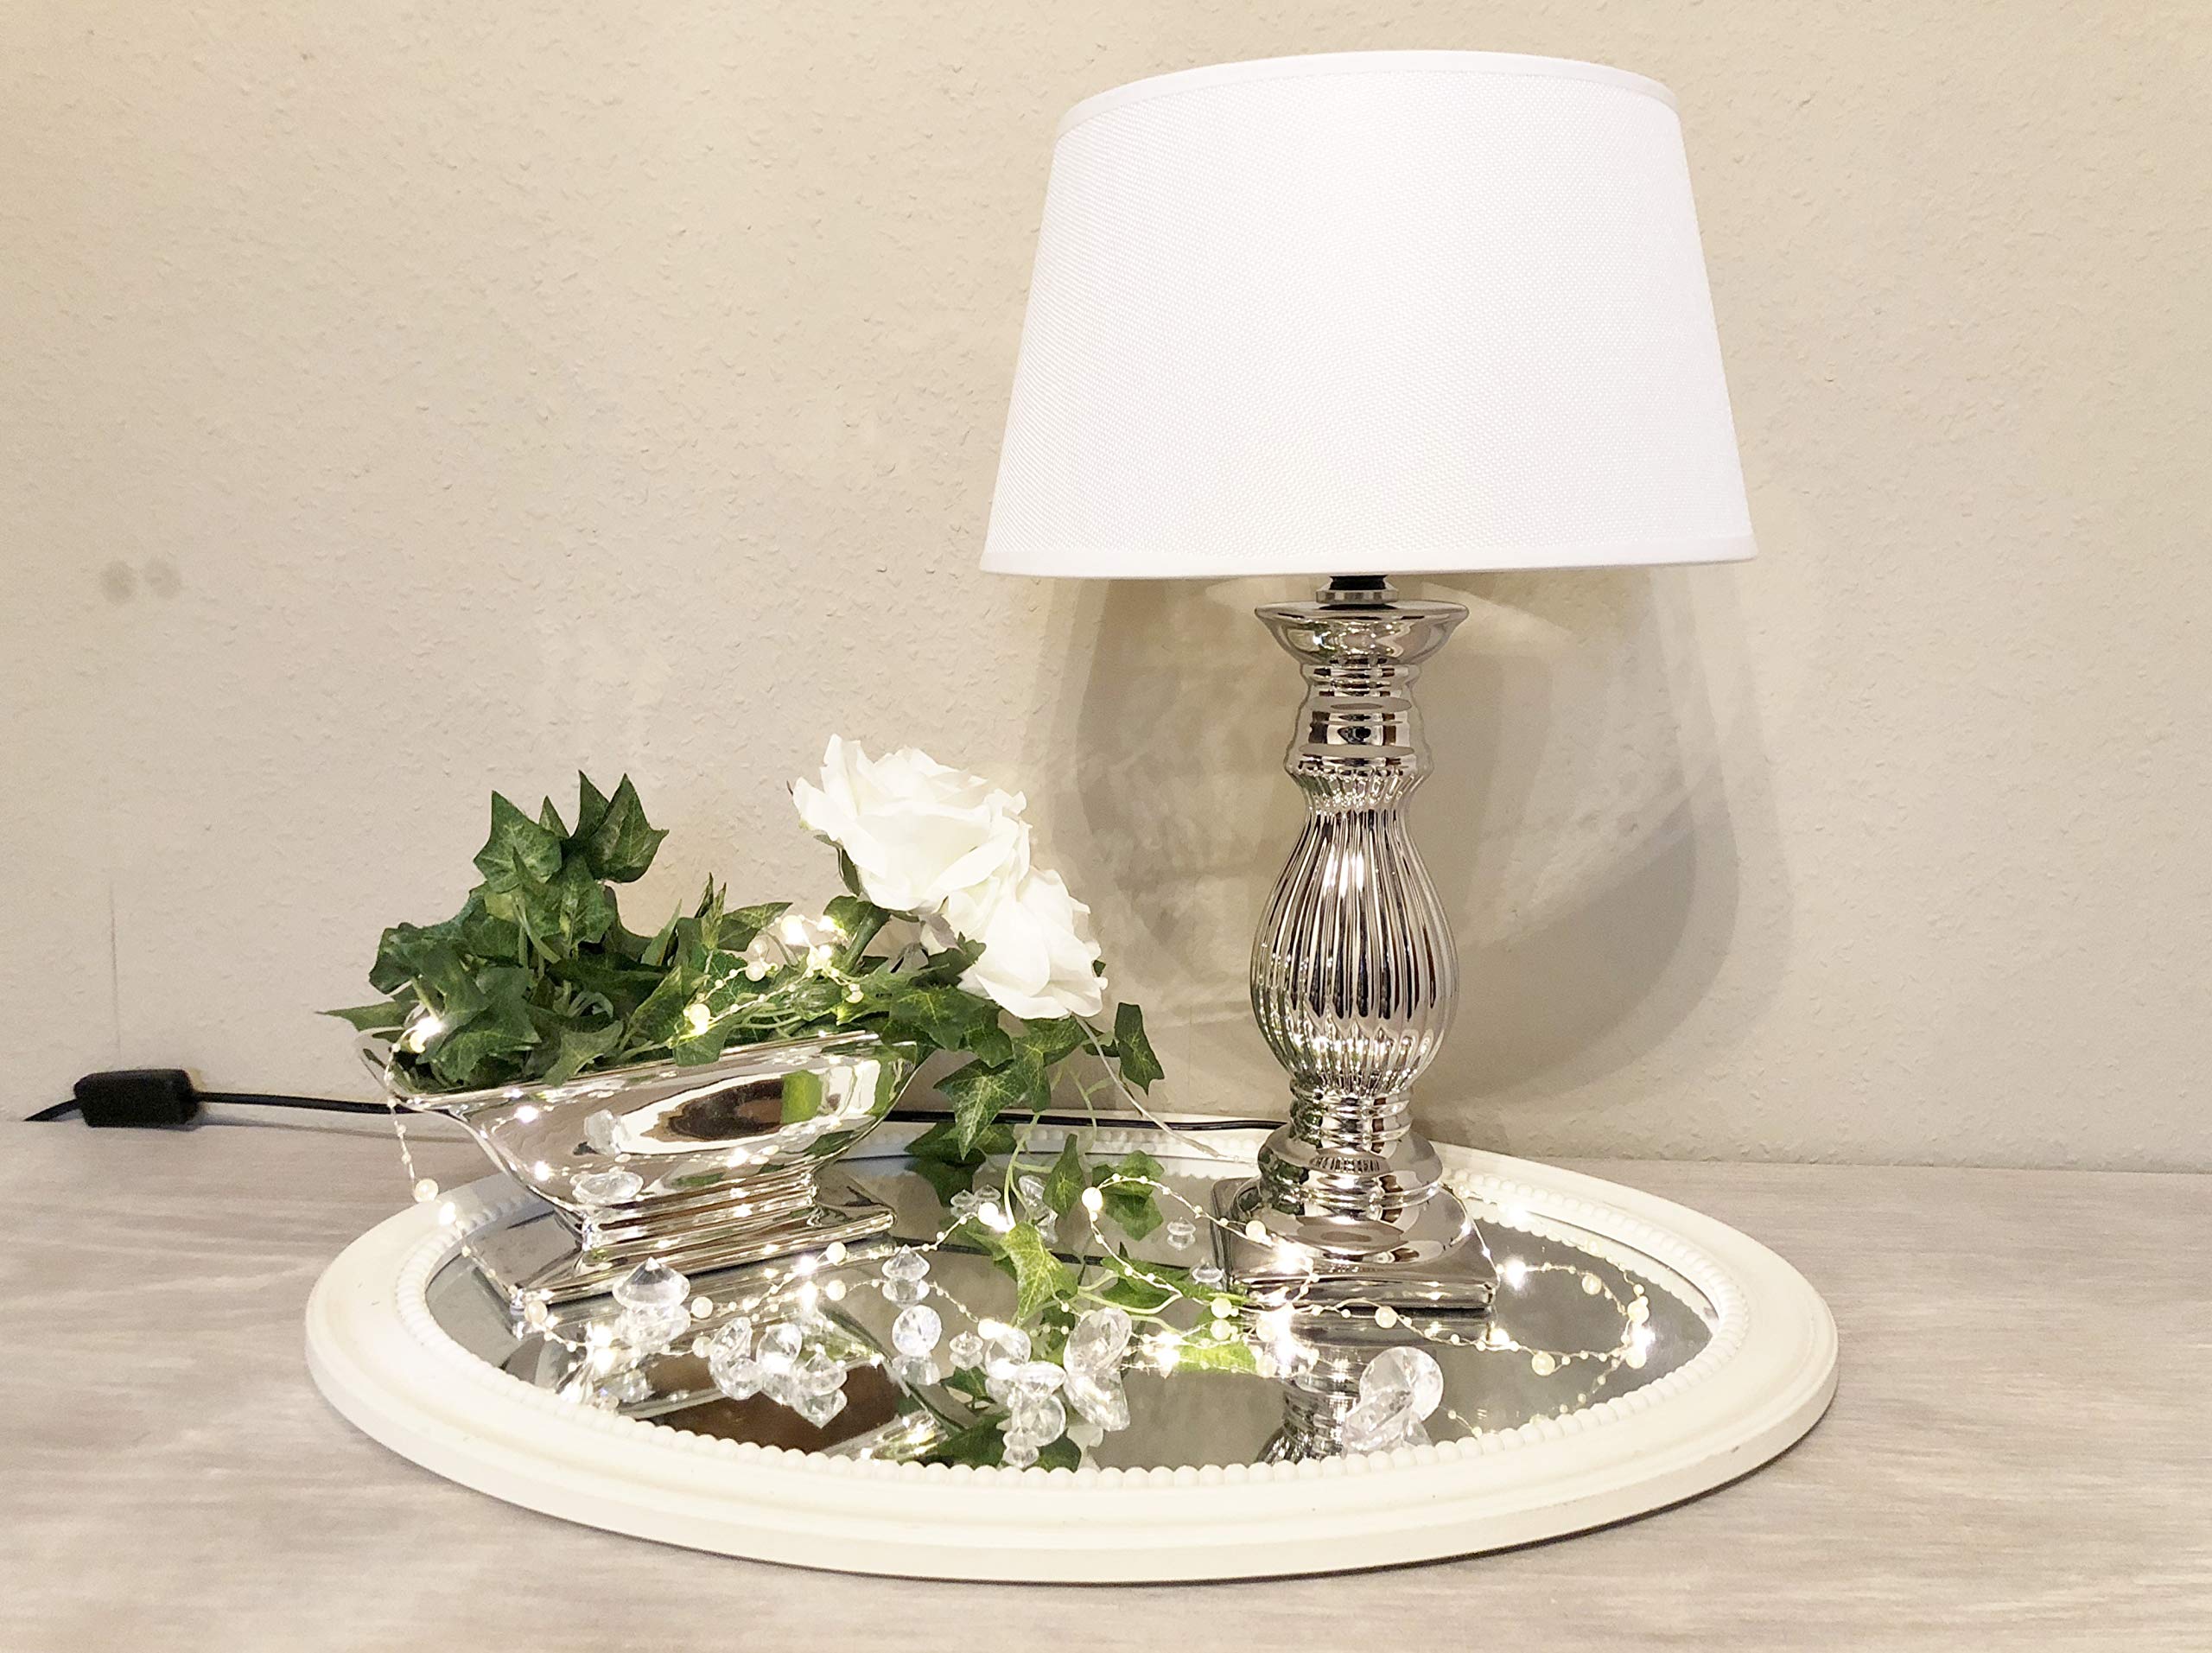 DRULINE Tischlampe Steffi Lampe Nachttischleuchte mit Schirm Klassische Dekoration fürs Schlafzimmer Wohnzimmer Esszimmer aus Keramik Silber Fuß (Weiß, Mittel H47 cm)